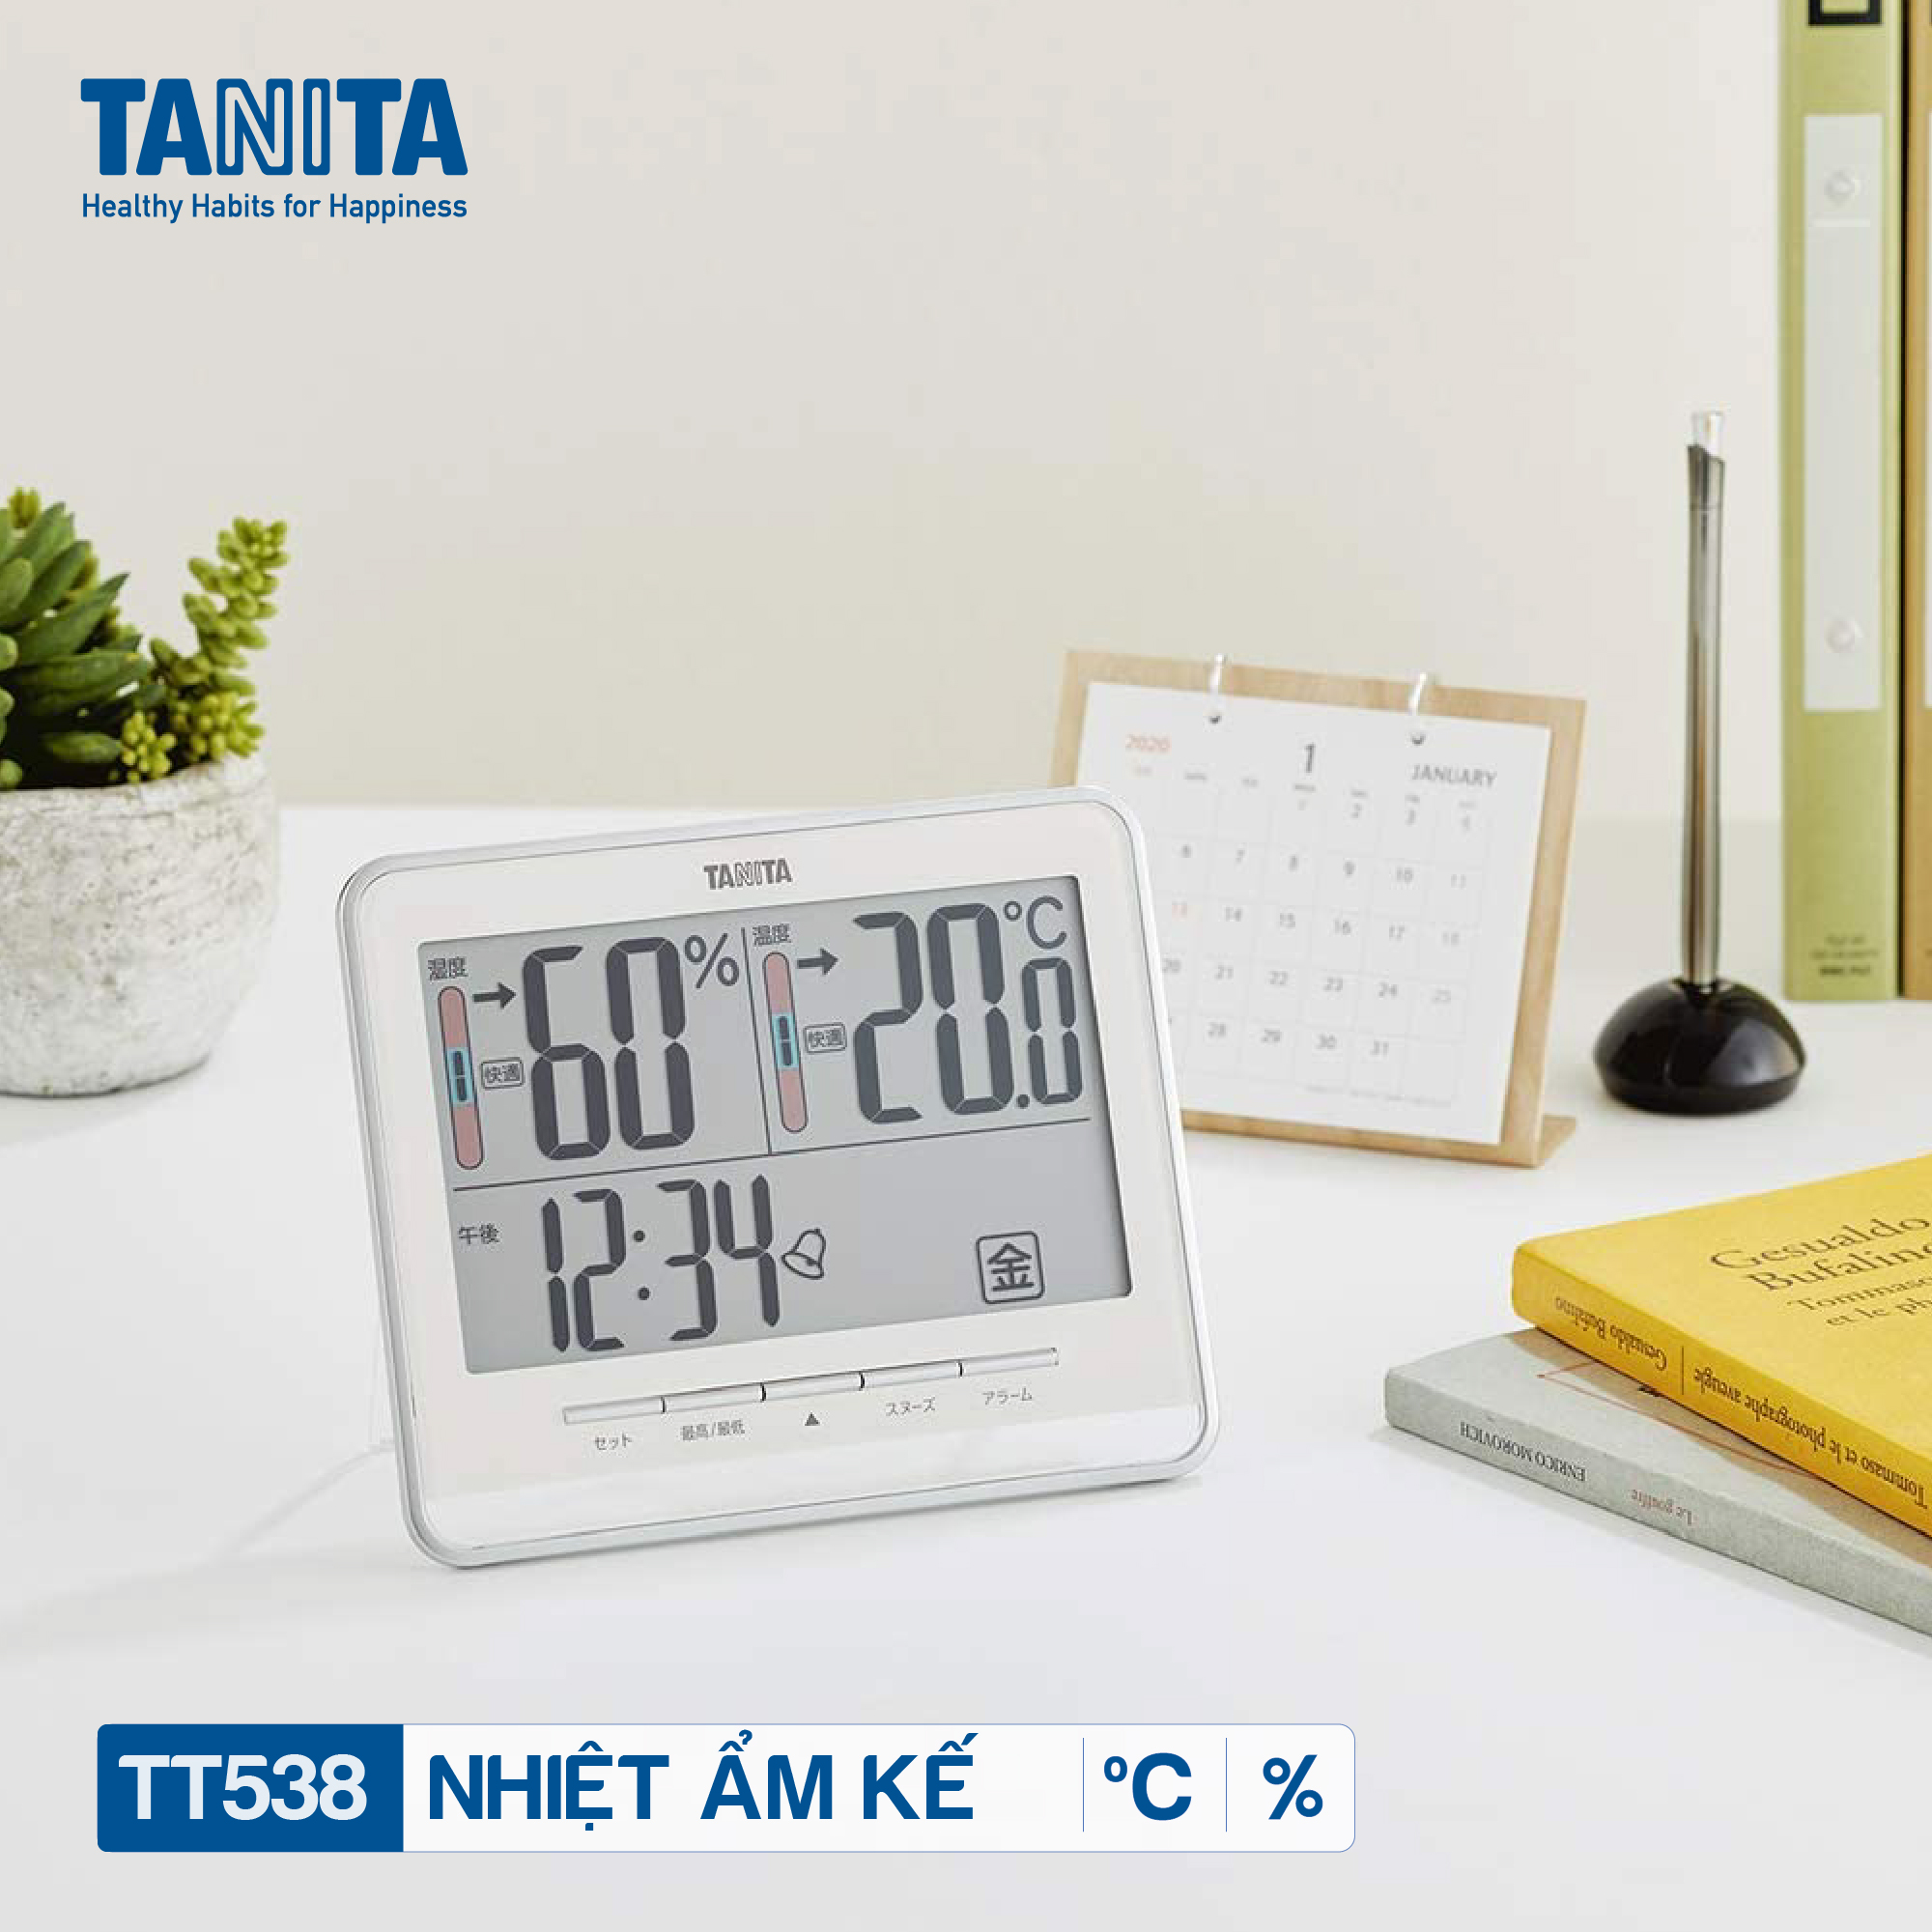 Nhiệt ẩm kế điện tử TANITA TT538 chính hãng nhật bản